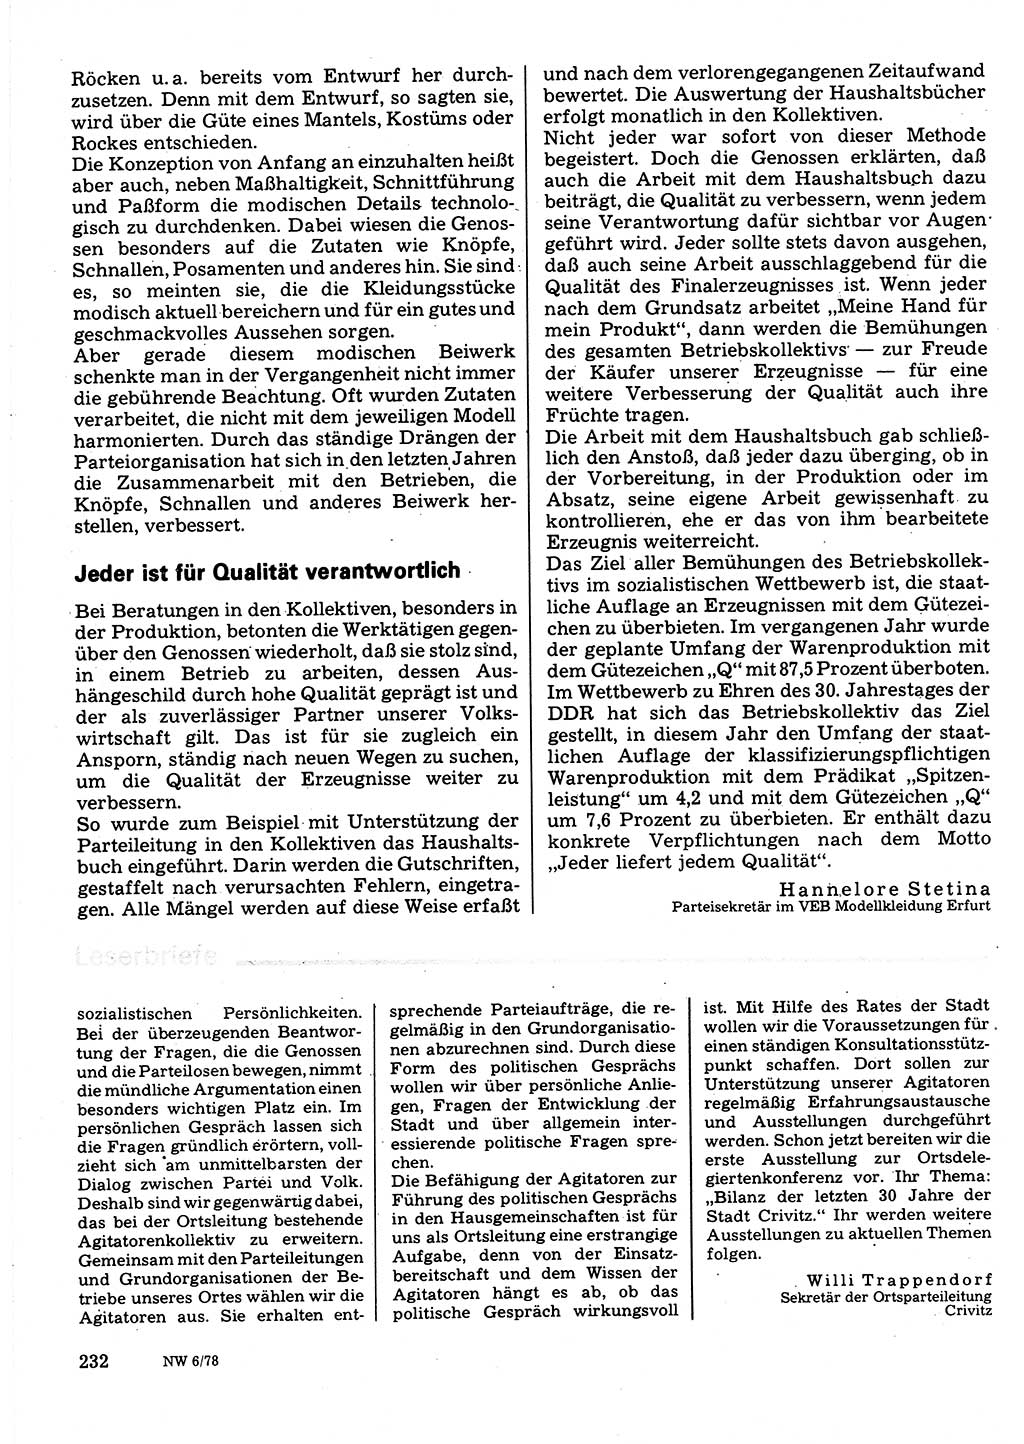 Neuer Weg (NW), Organ des Zentralkomitees (ZK) der SED (Sozialistische Einheitspartei Deutschlands) für Fragen des Parteilebens, 33. Jahrgang [Deutsche Demokratische Republik (DDR)] 1978, Seite 232 (NW ZK SED DDR 1978, S. 232)